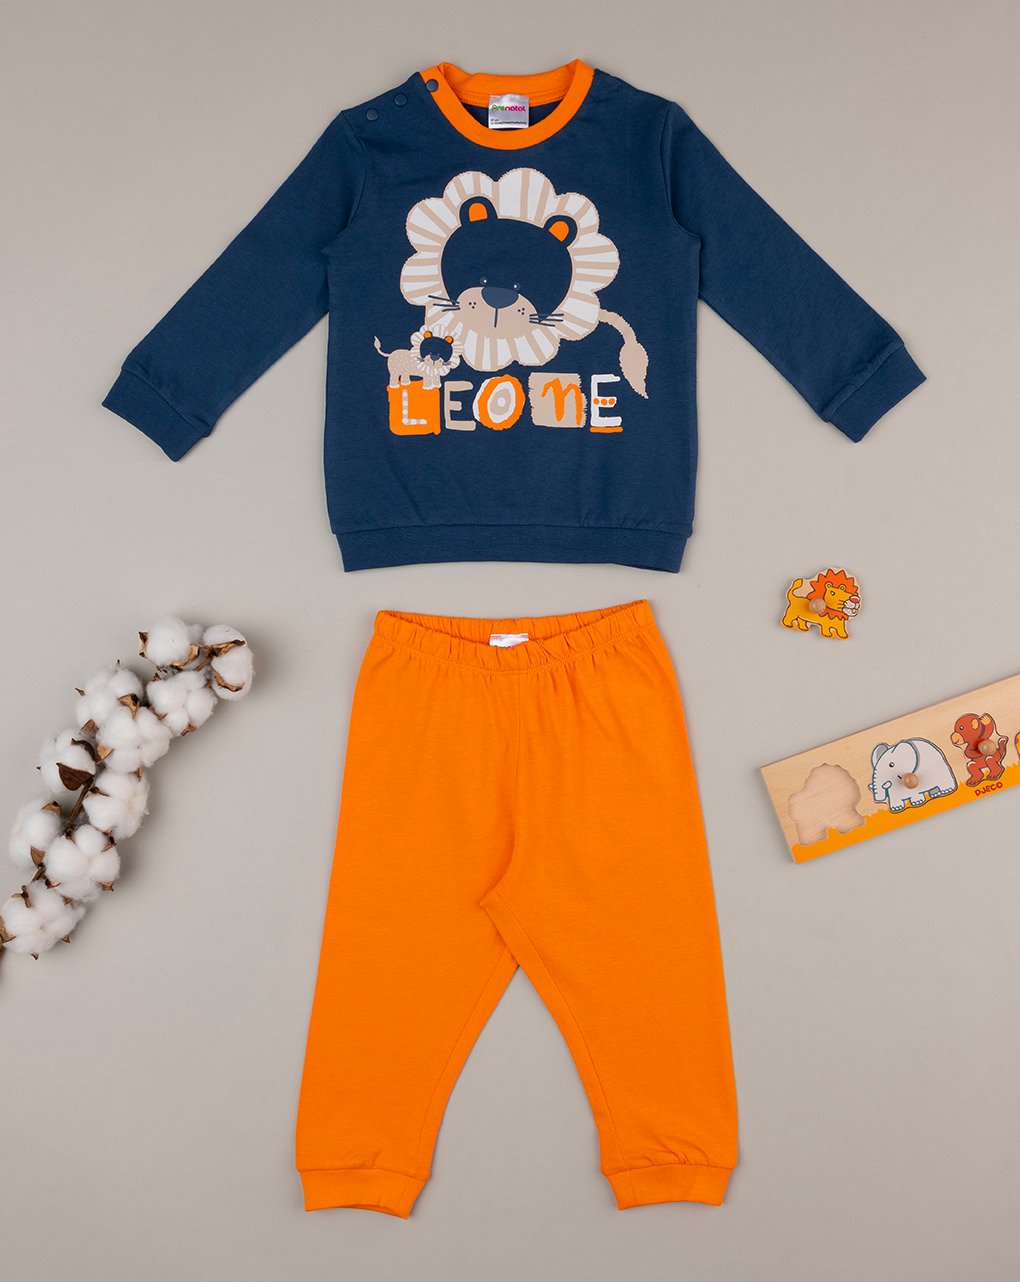 βρεφική πιτζάμα μπλε/πορτοκαλί με λιοντάρι για αγόρι